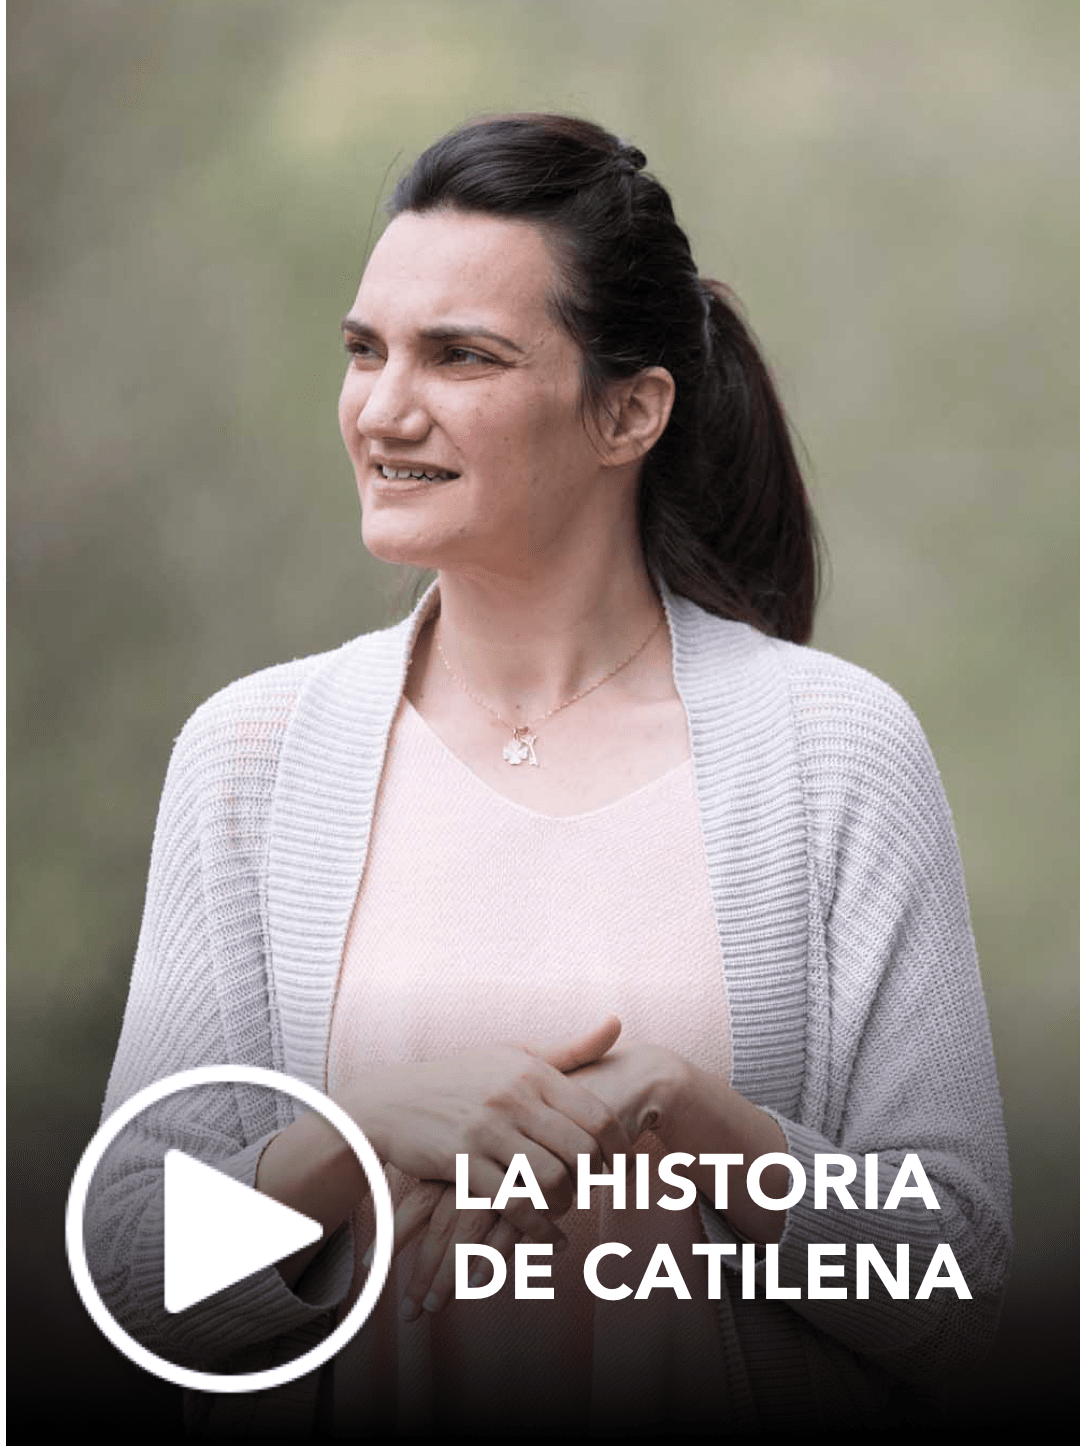 Vea la historia de Catilena